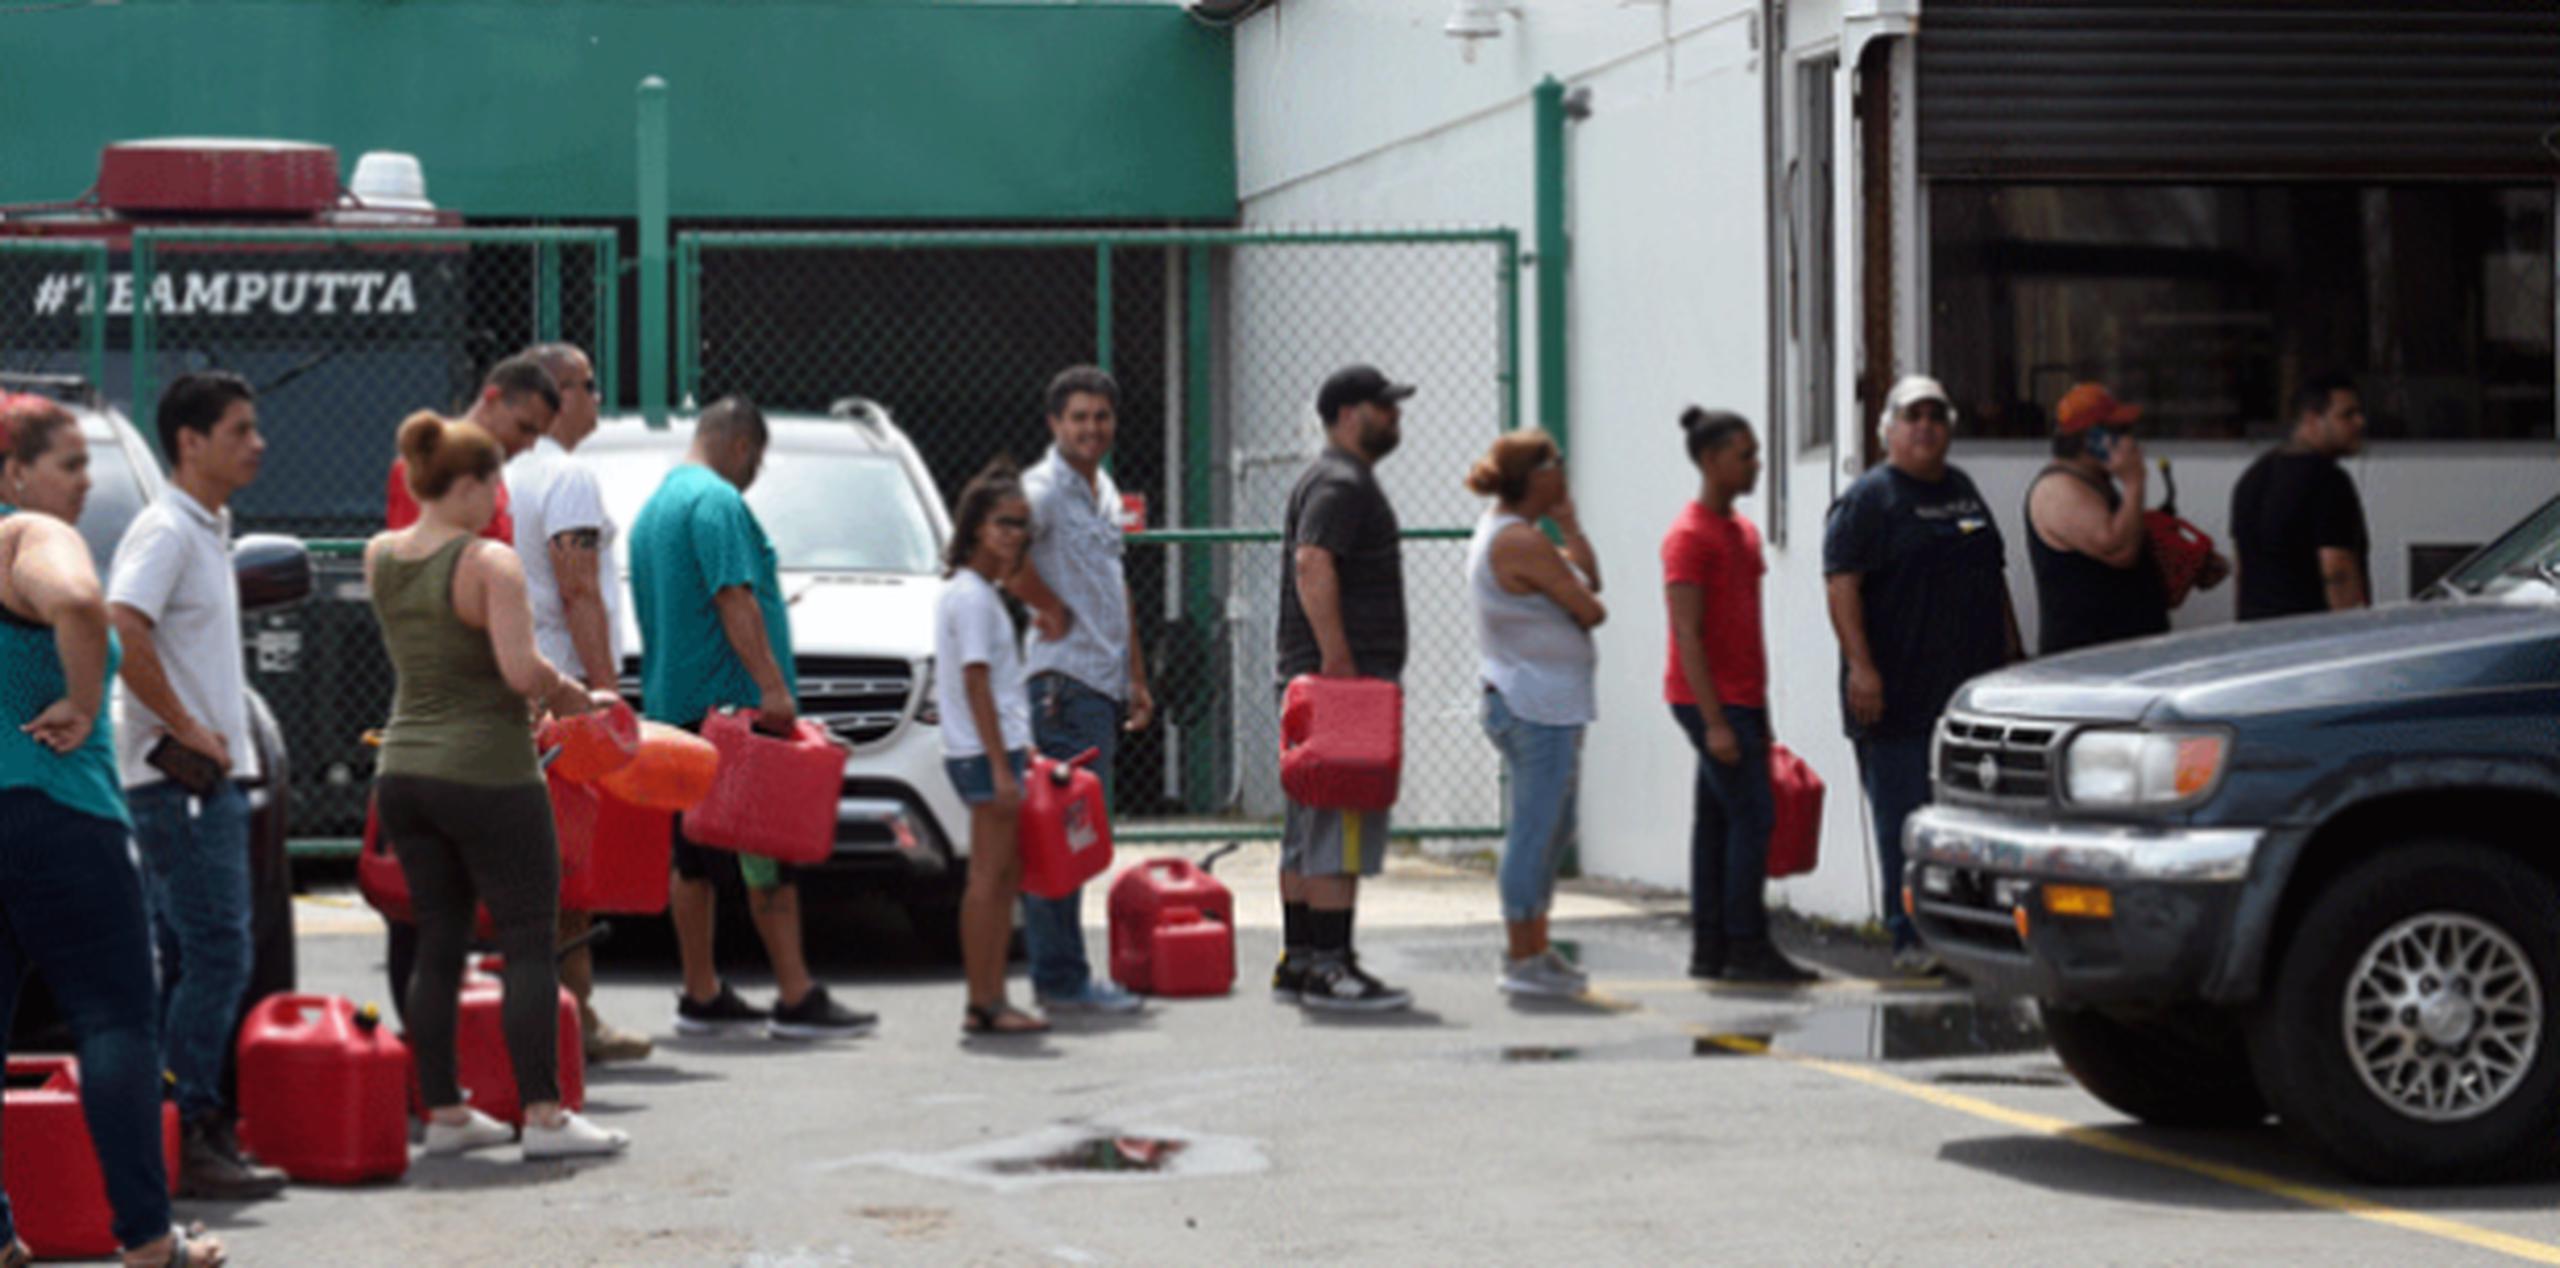 Luis Gerardo Marín, dijo esta tarde que espera que para el martes el 80% de la distribución de gasolina en el país esté en pie. (andre.kang@gfrmedia.com)